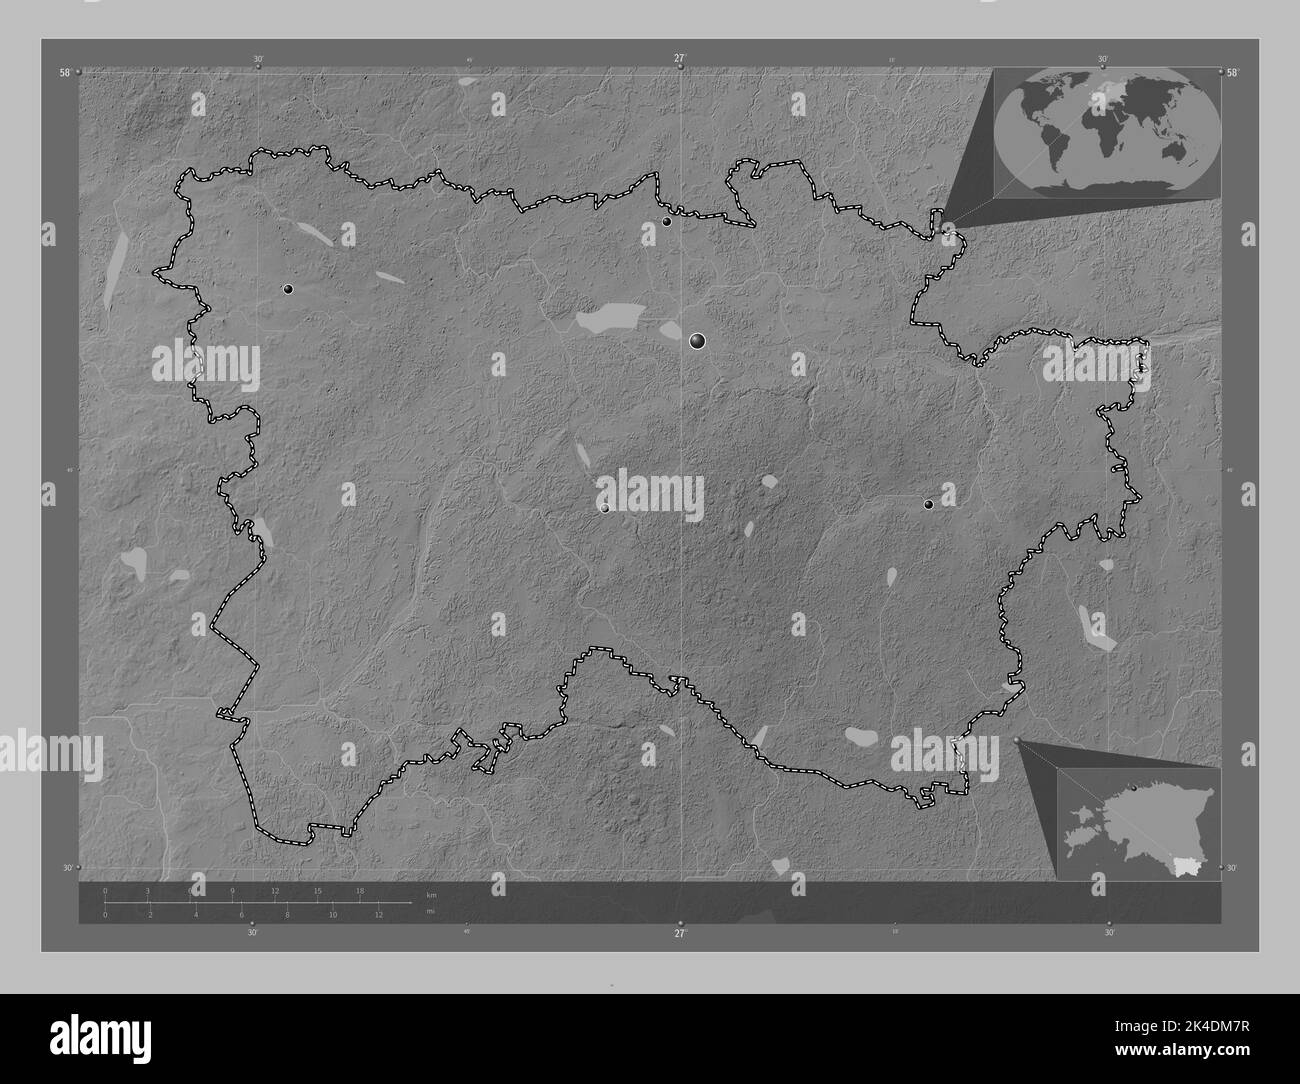 Voru, comté d'Estonie. Carte d'altitude en niveaux de gris avec lacs et rivières. Lieux des principales villes de la région. Cartes d'emplacement auxiliaire d'angle Banque D'Images